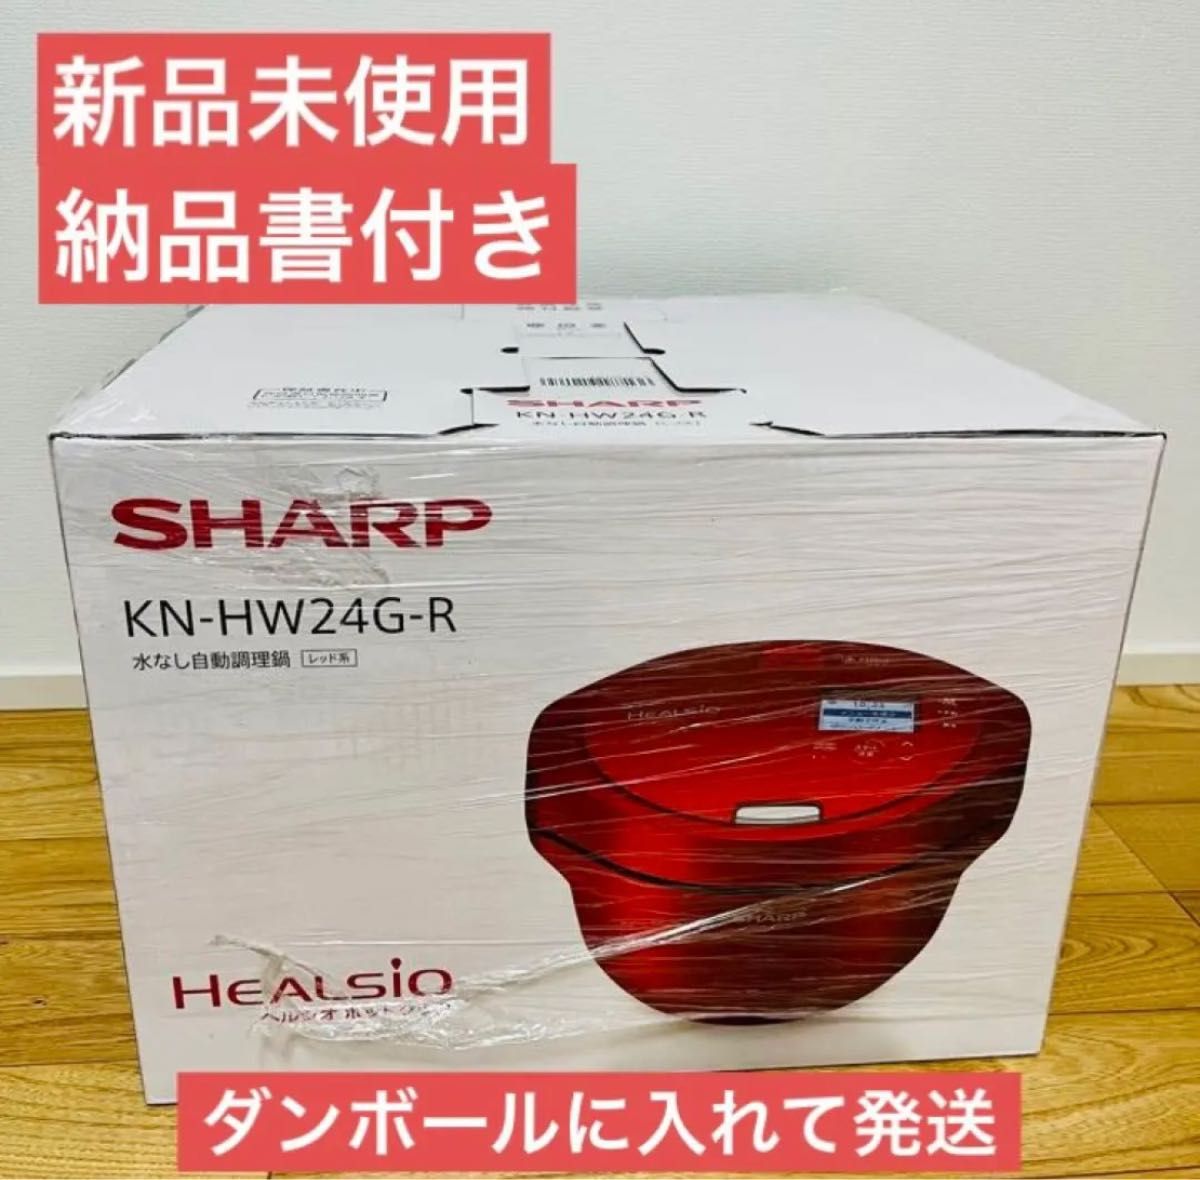 交換無料 SHARP 水なし自動調理鍋 HEALSiO ヘルシオ ホットクック 2.4L